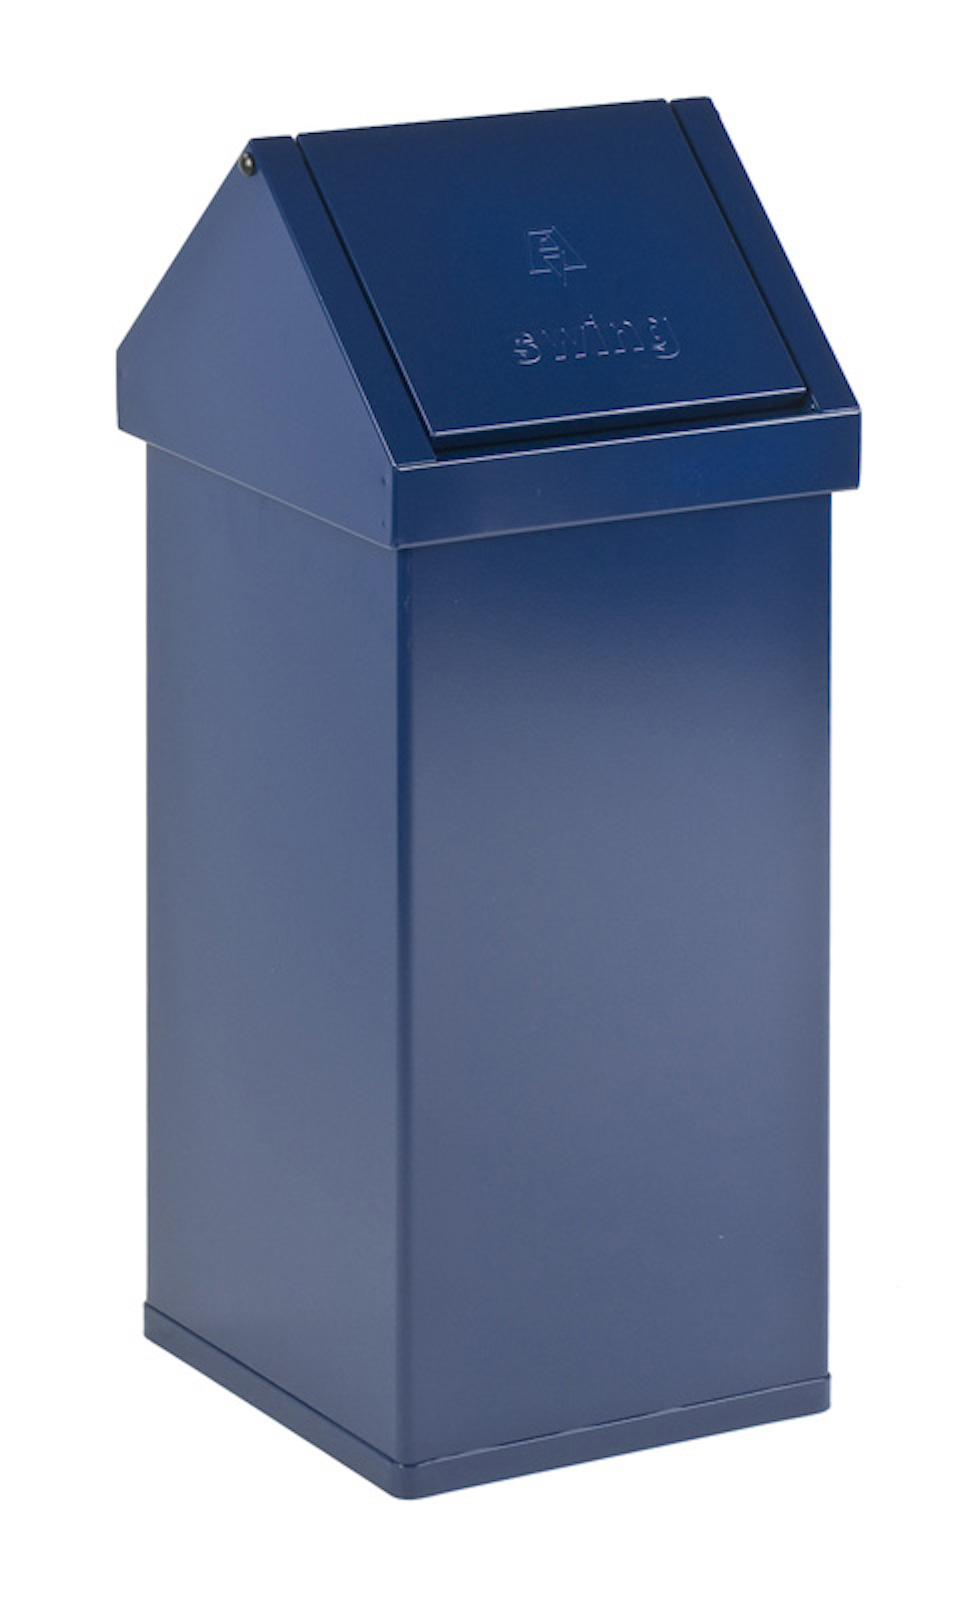 Eckiger Aluminium Abfallbehälter Haiti mit Swingdeckel | 55 Liter, HxBxT 77x30x30cm | Blau